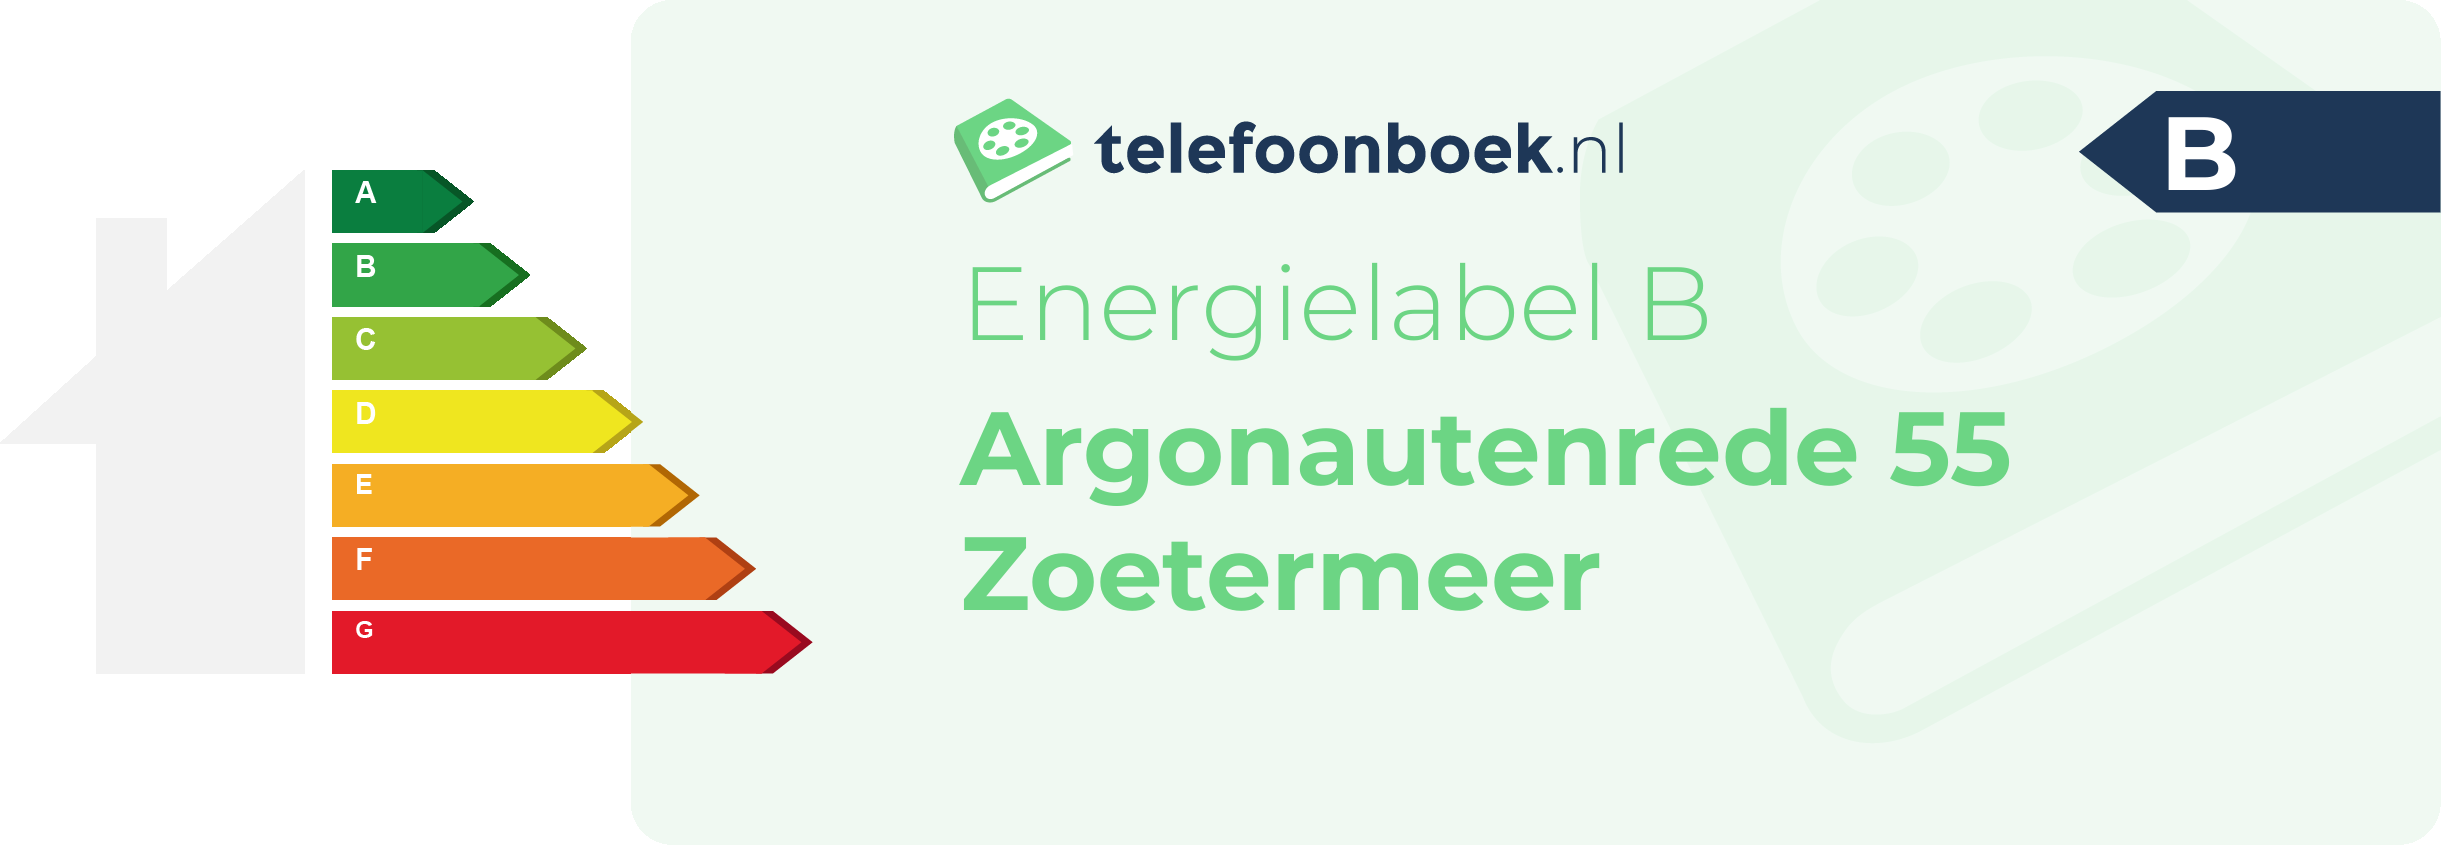 Energielabel Argonautenrede 55 Zoetermeer